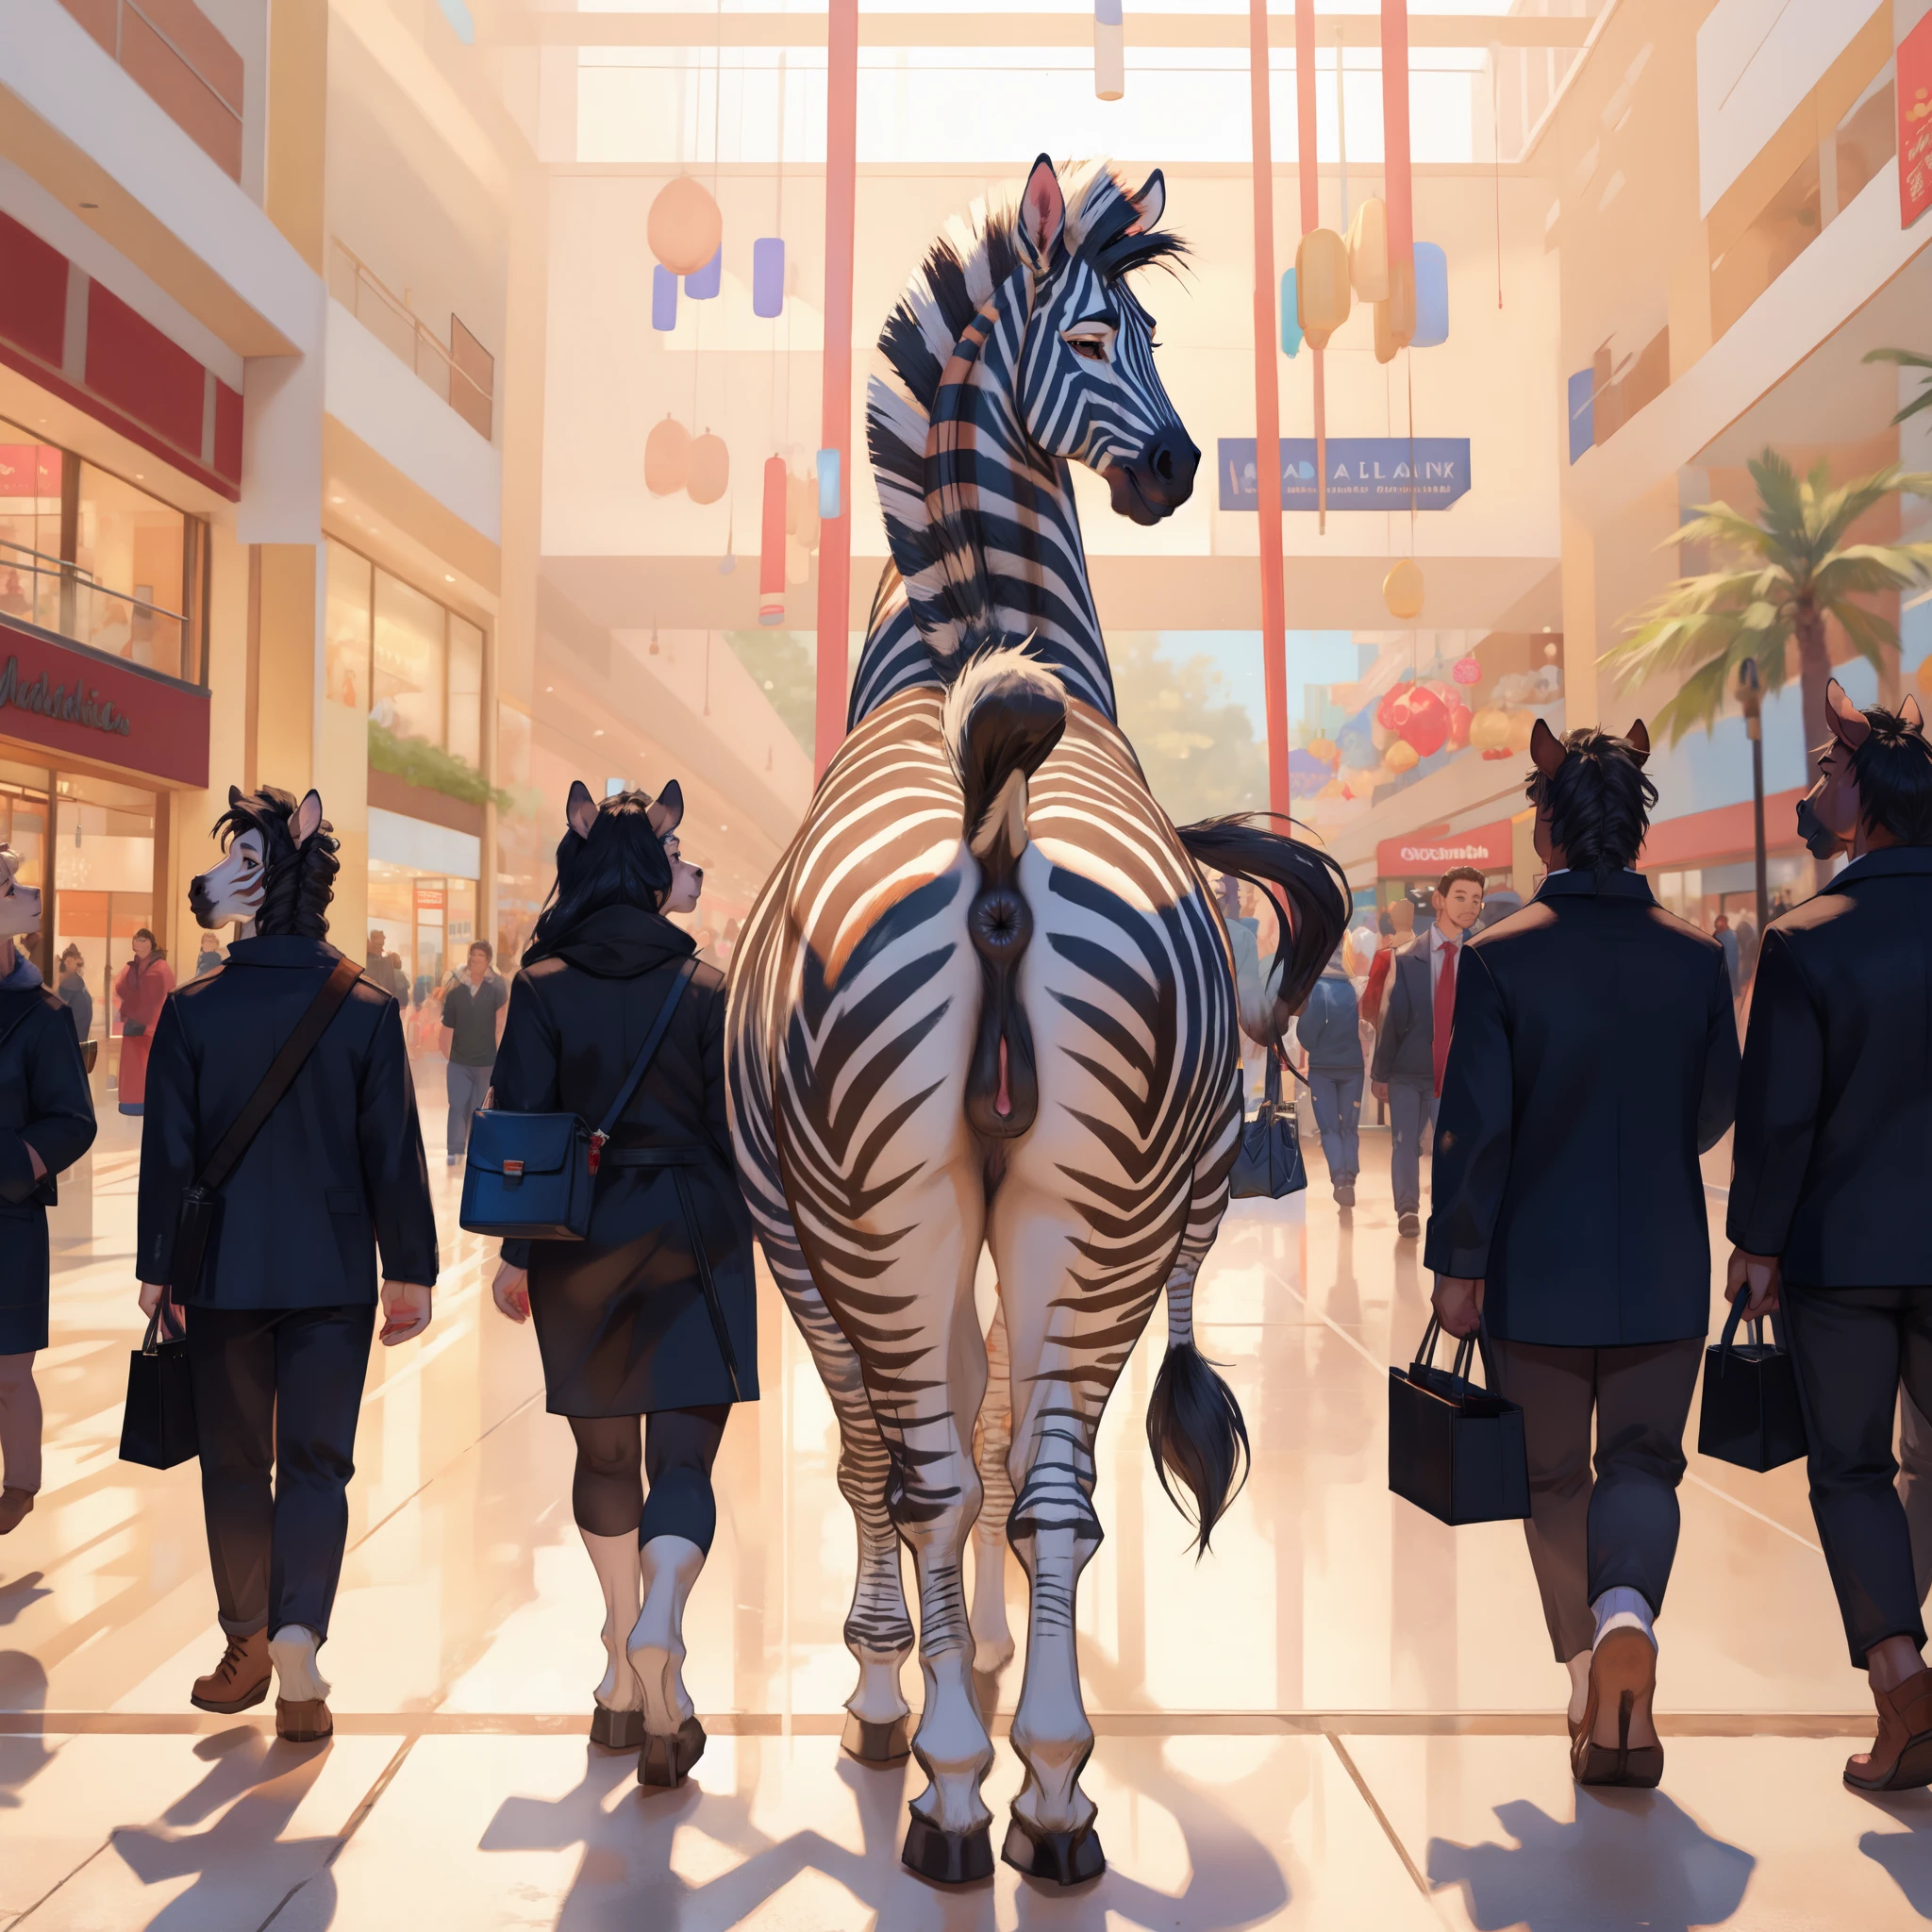 Zebra selvagem , fêmea, buceta de cavalo, ânus, bunda, andando , shopping center, pessoas no fundo 